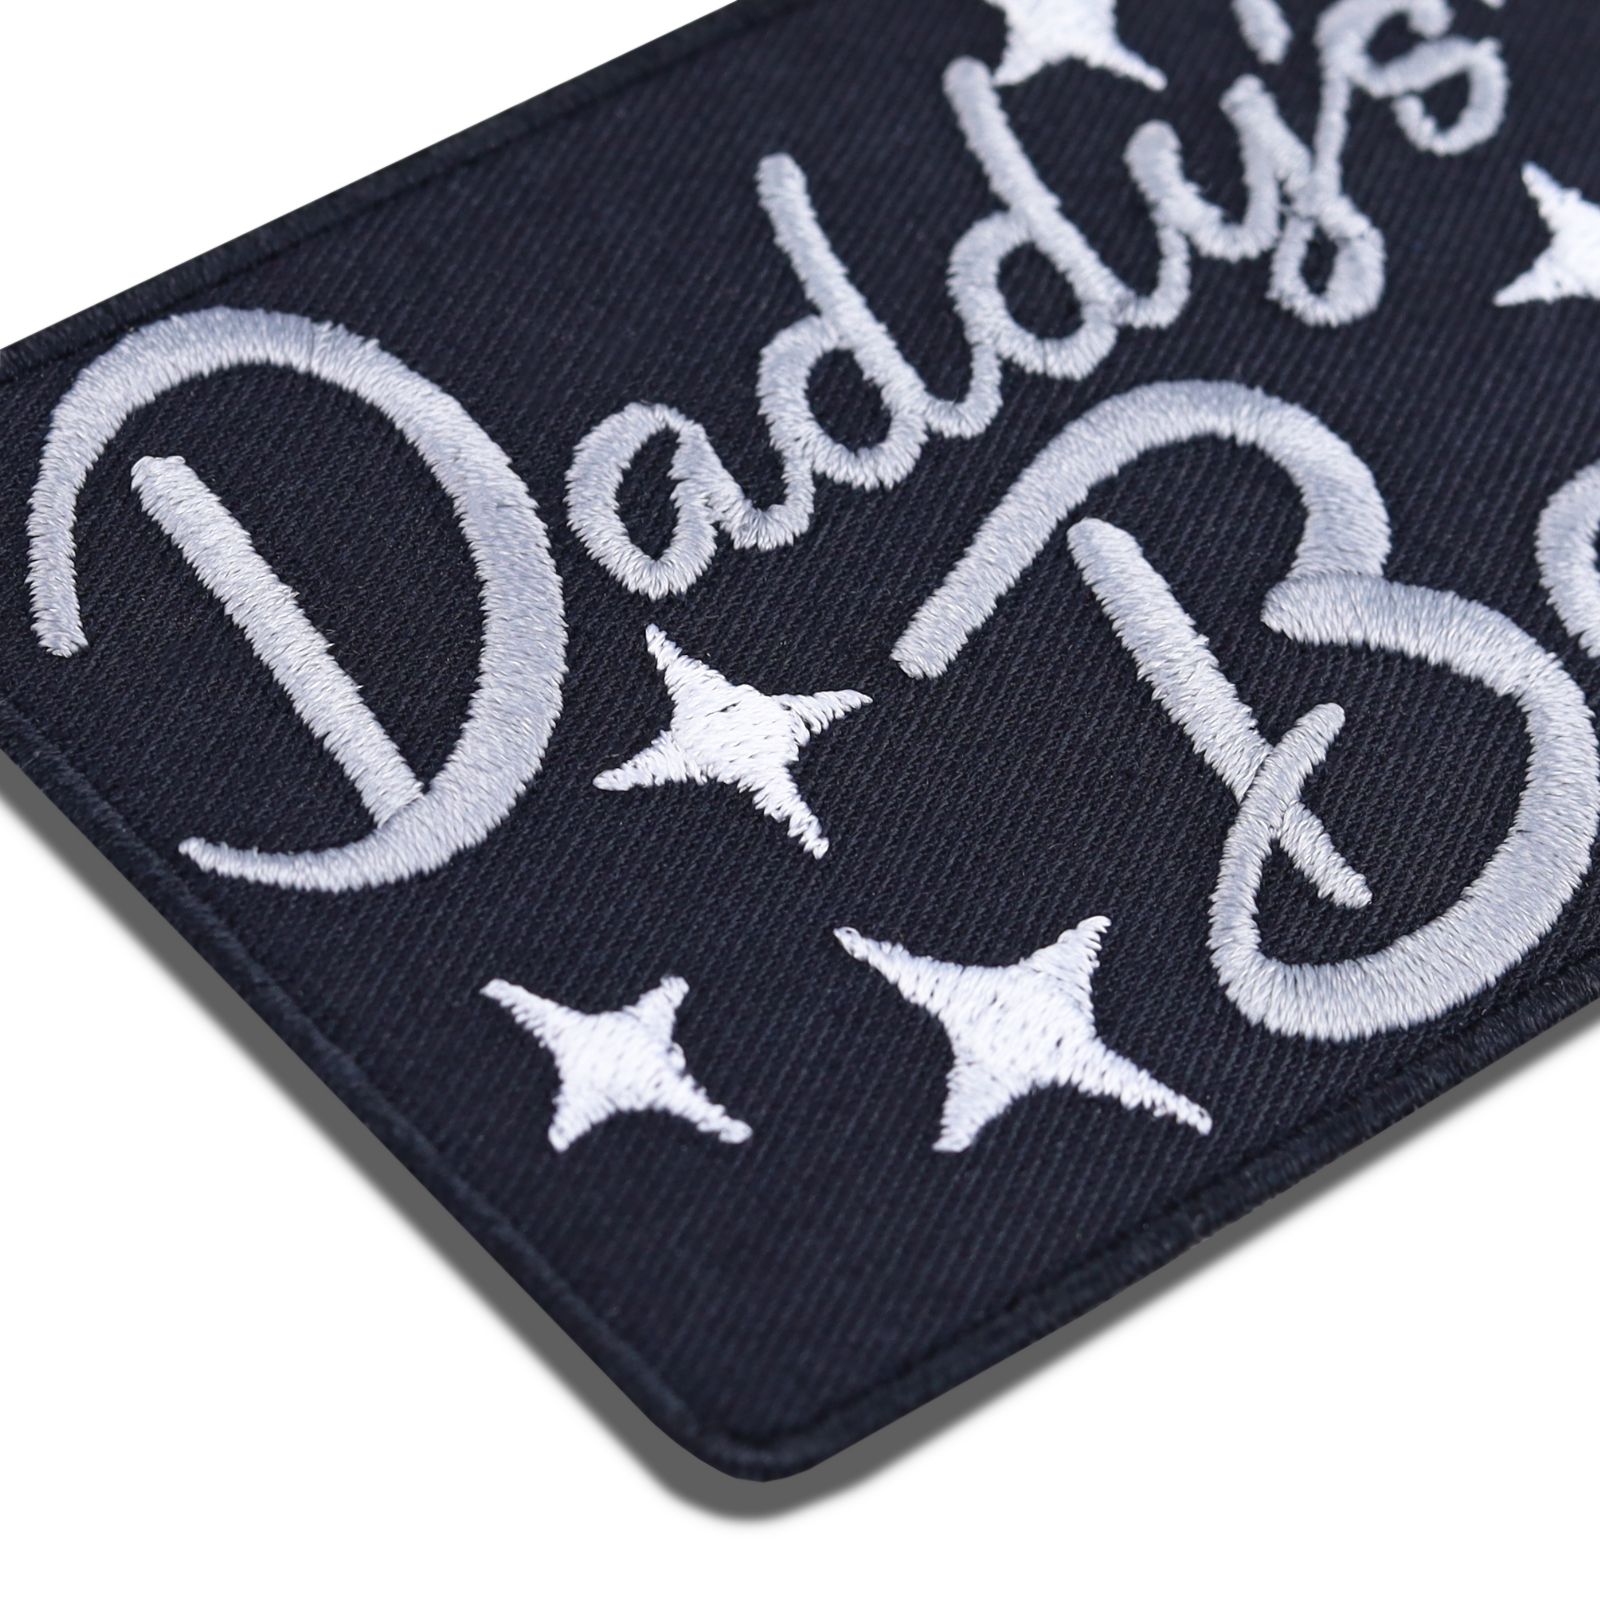 Daddy's Boy - Patch